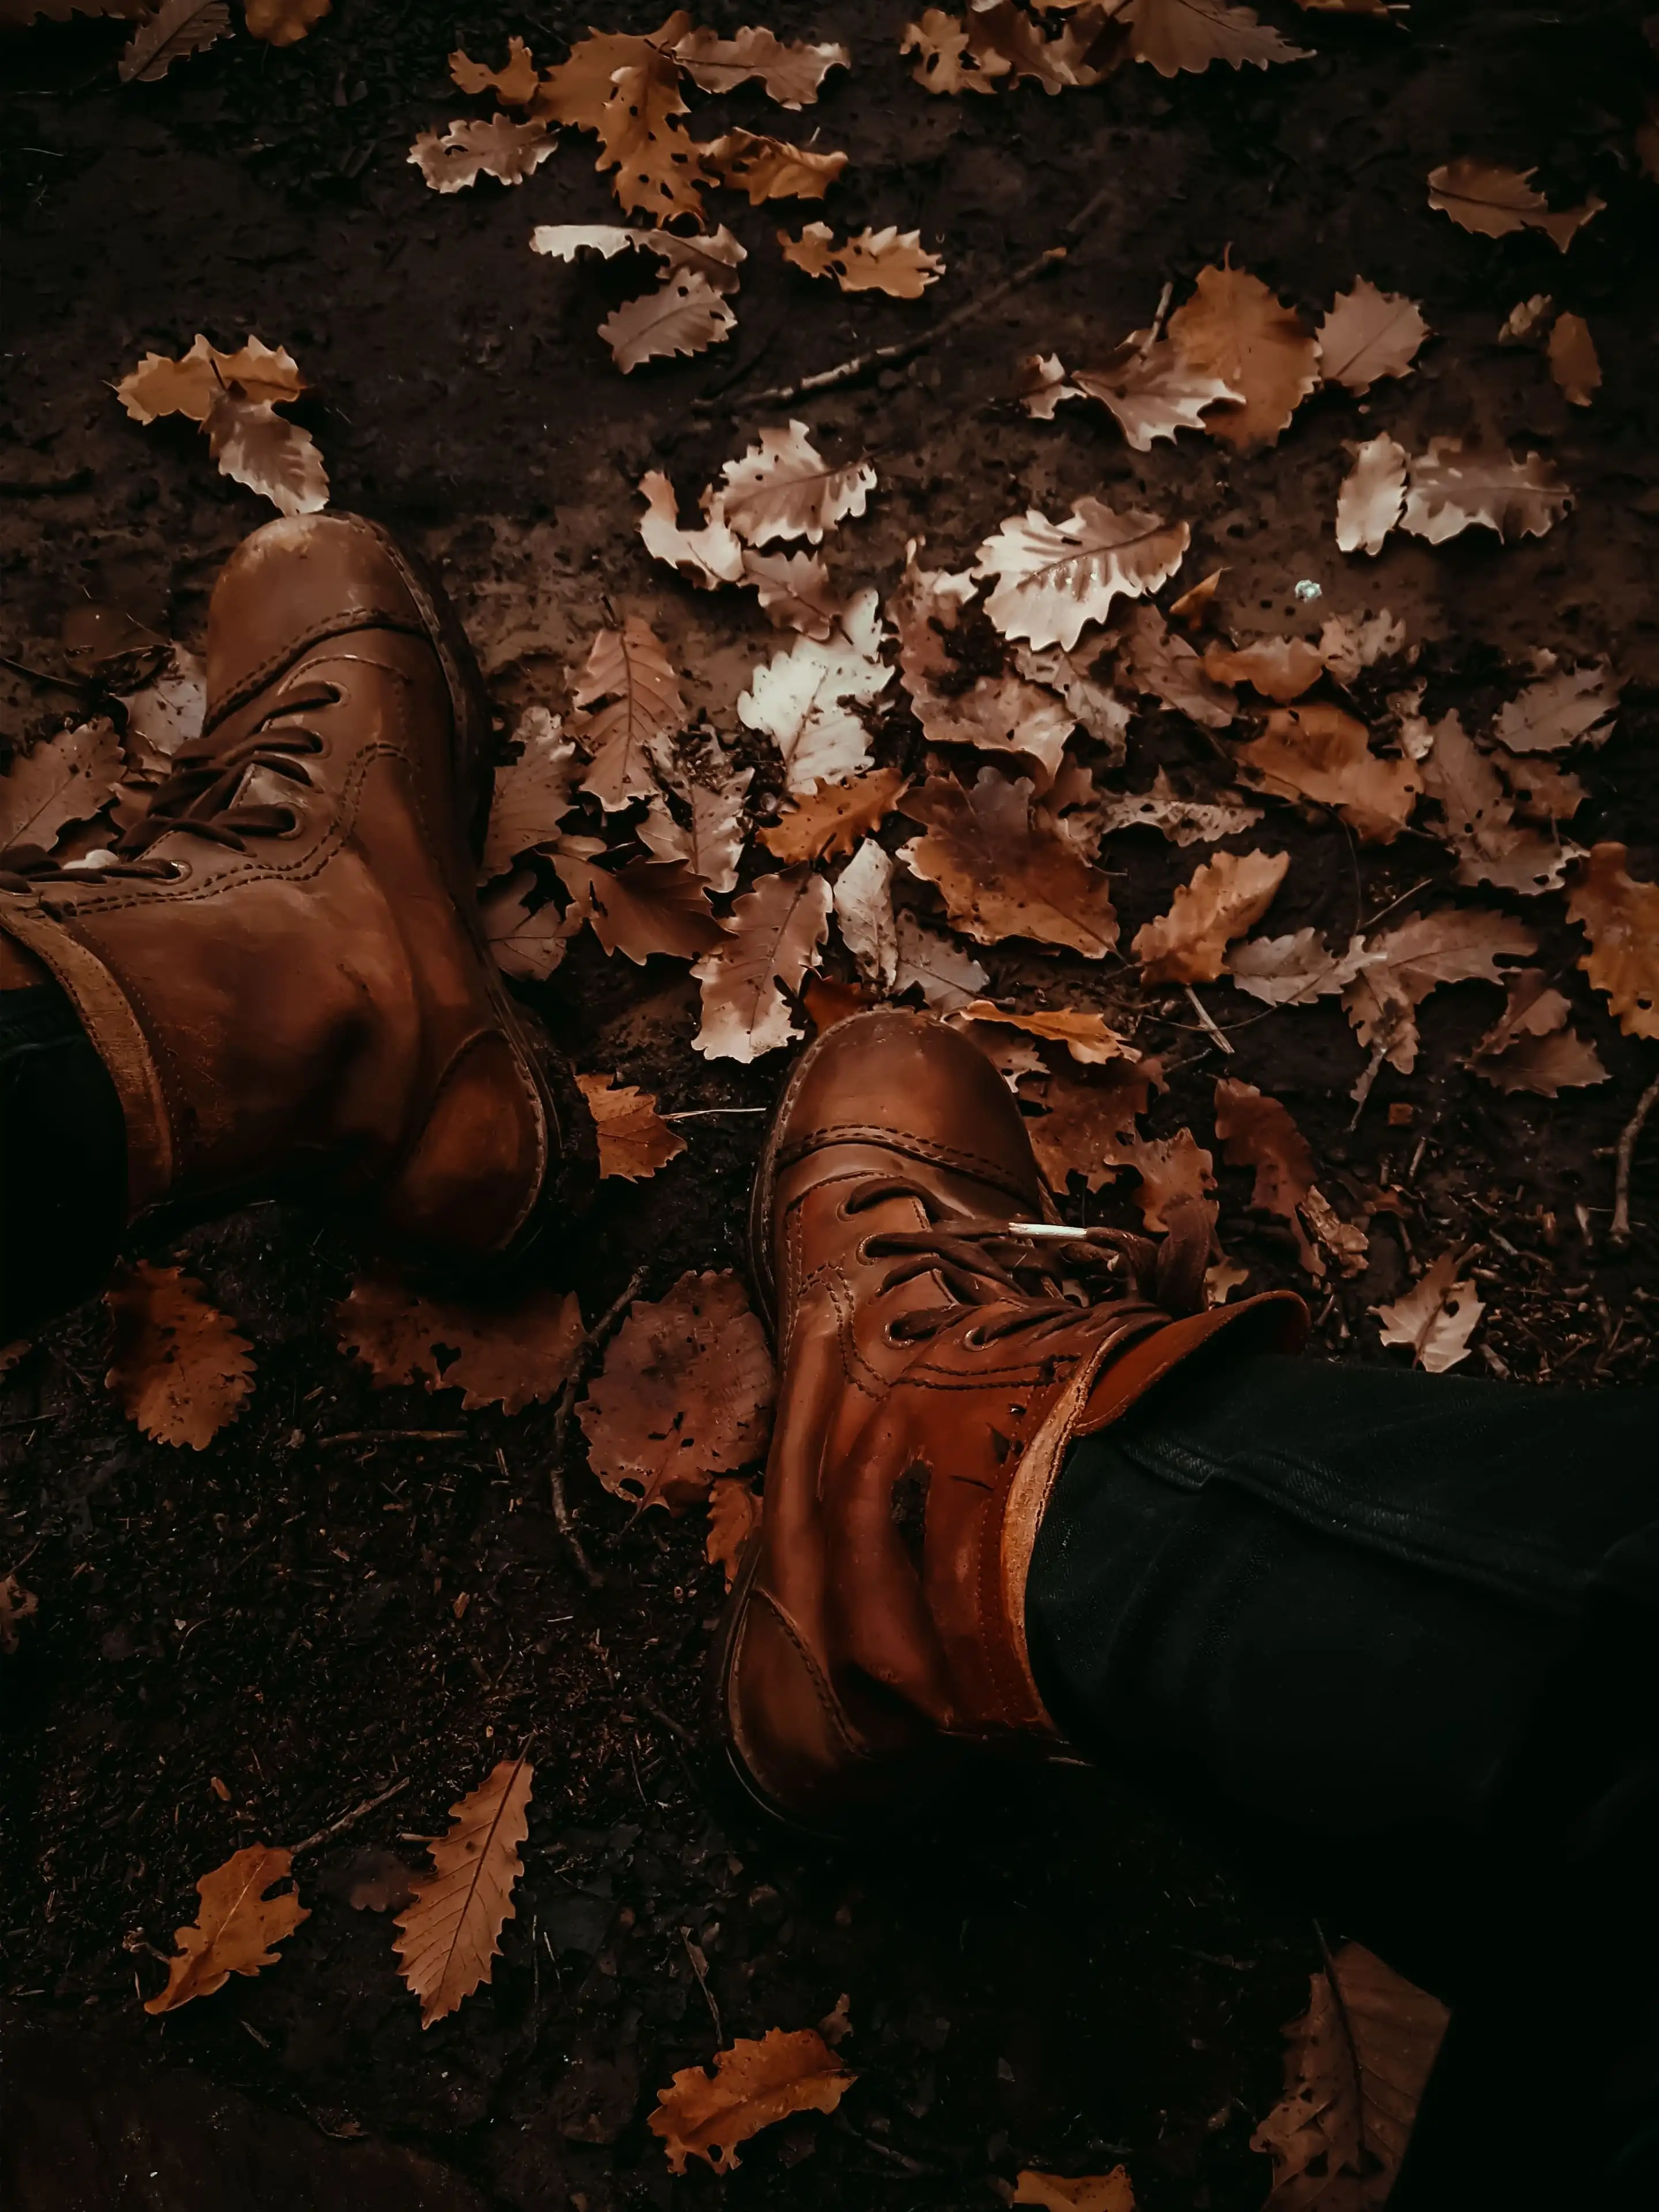 Herbst Hintergrundbild 2880x3840. Stiefel im Herbst Hintergrundbild